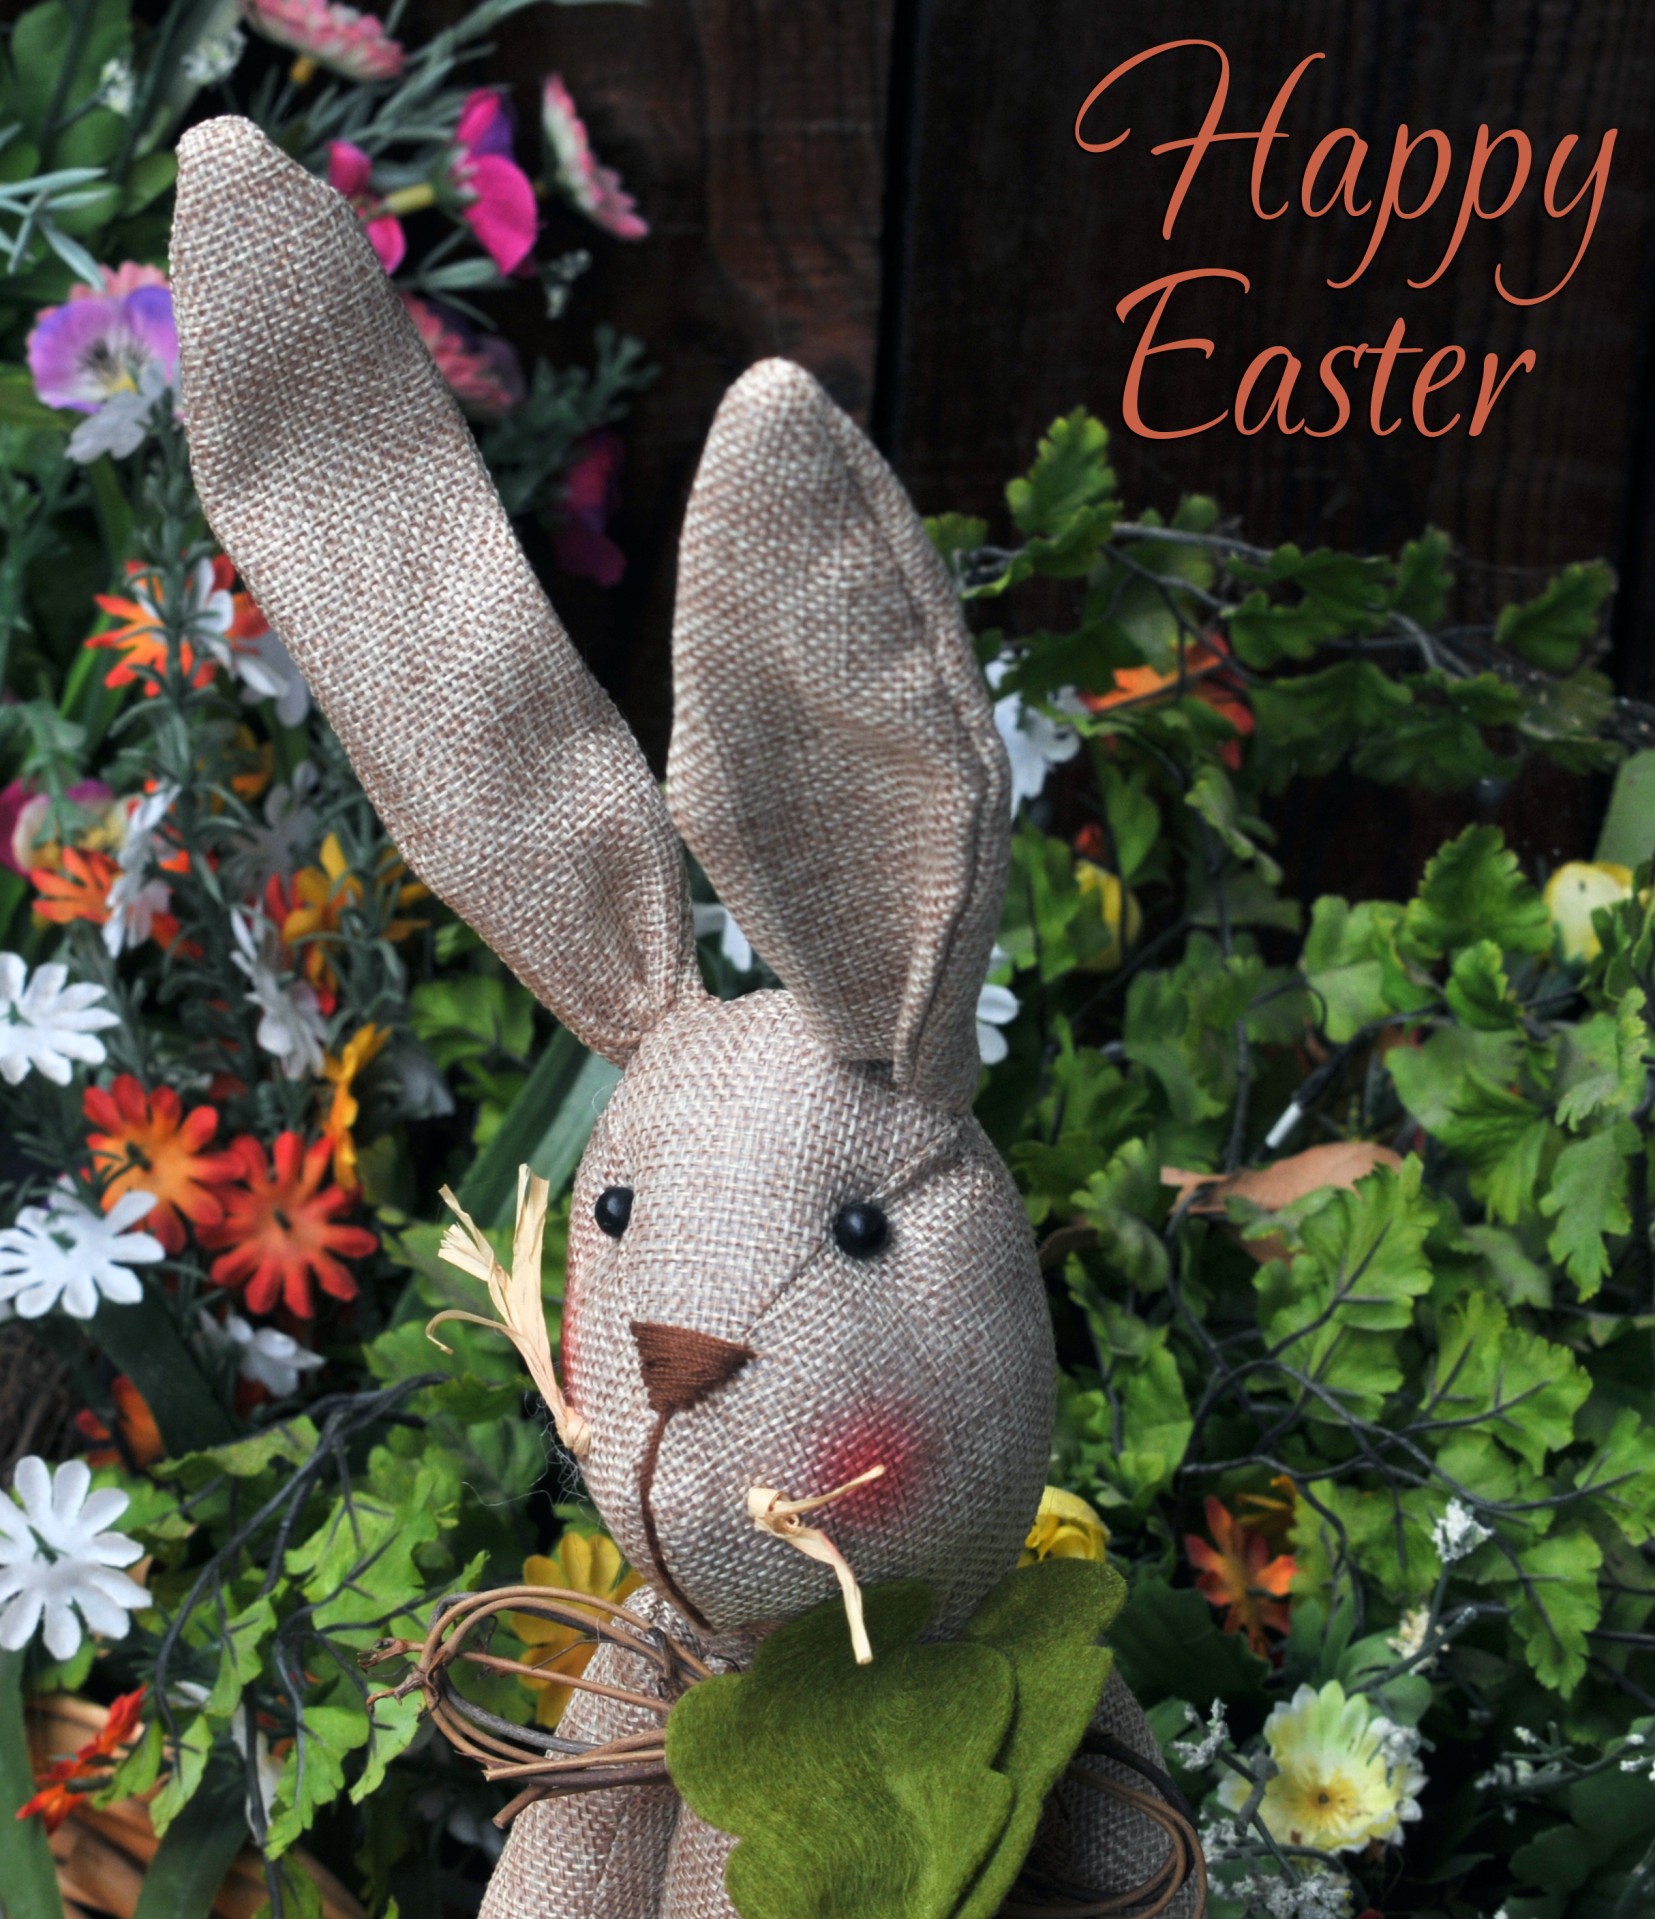 Happy Easter bunny z życzeniami